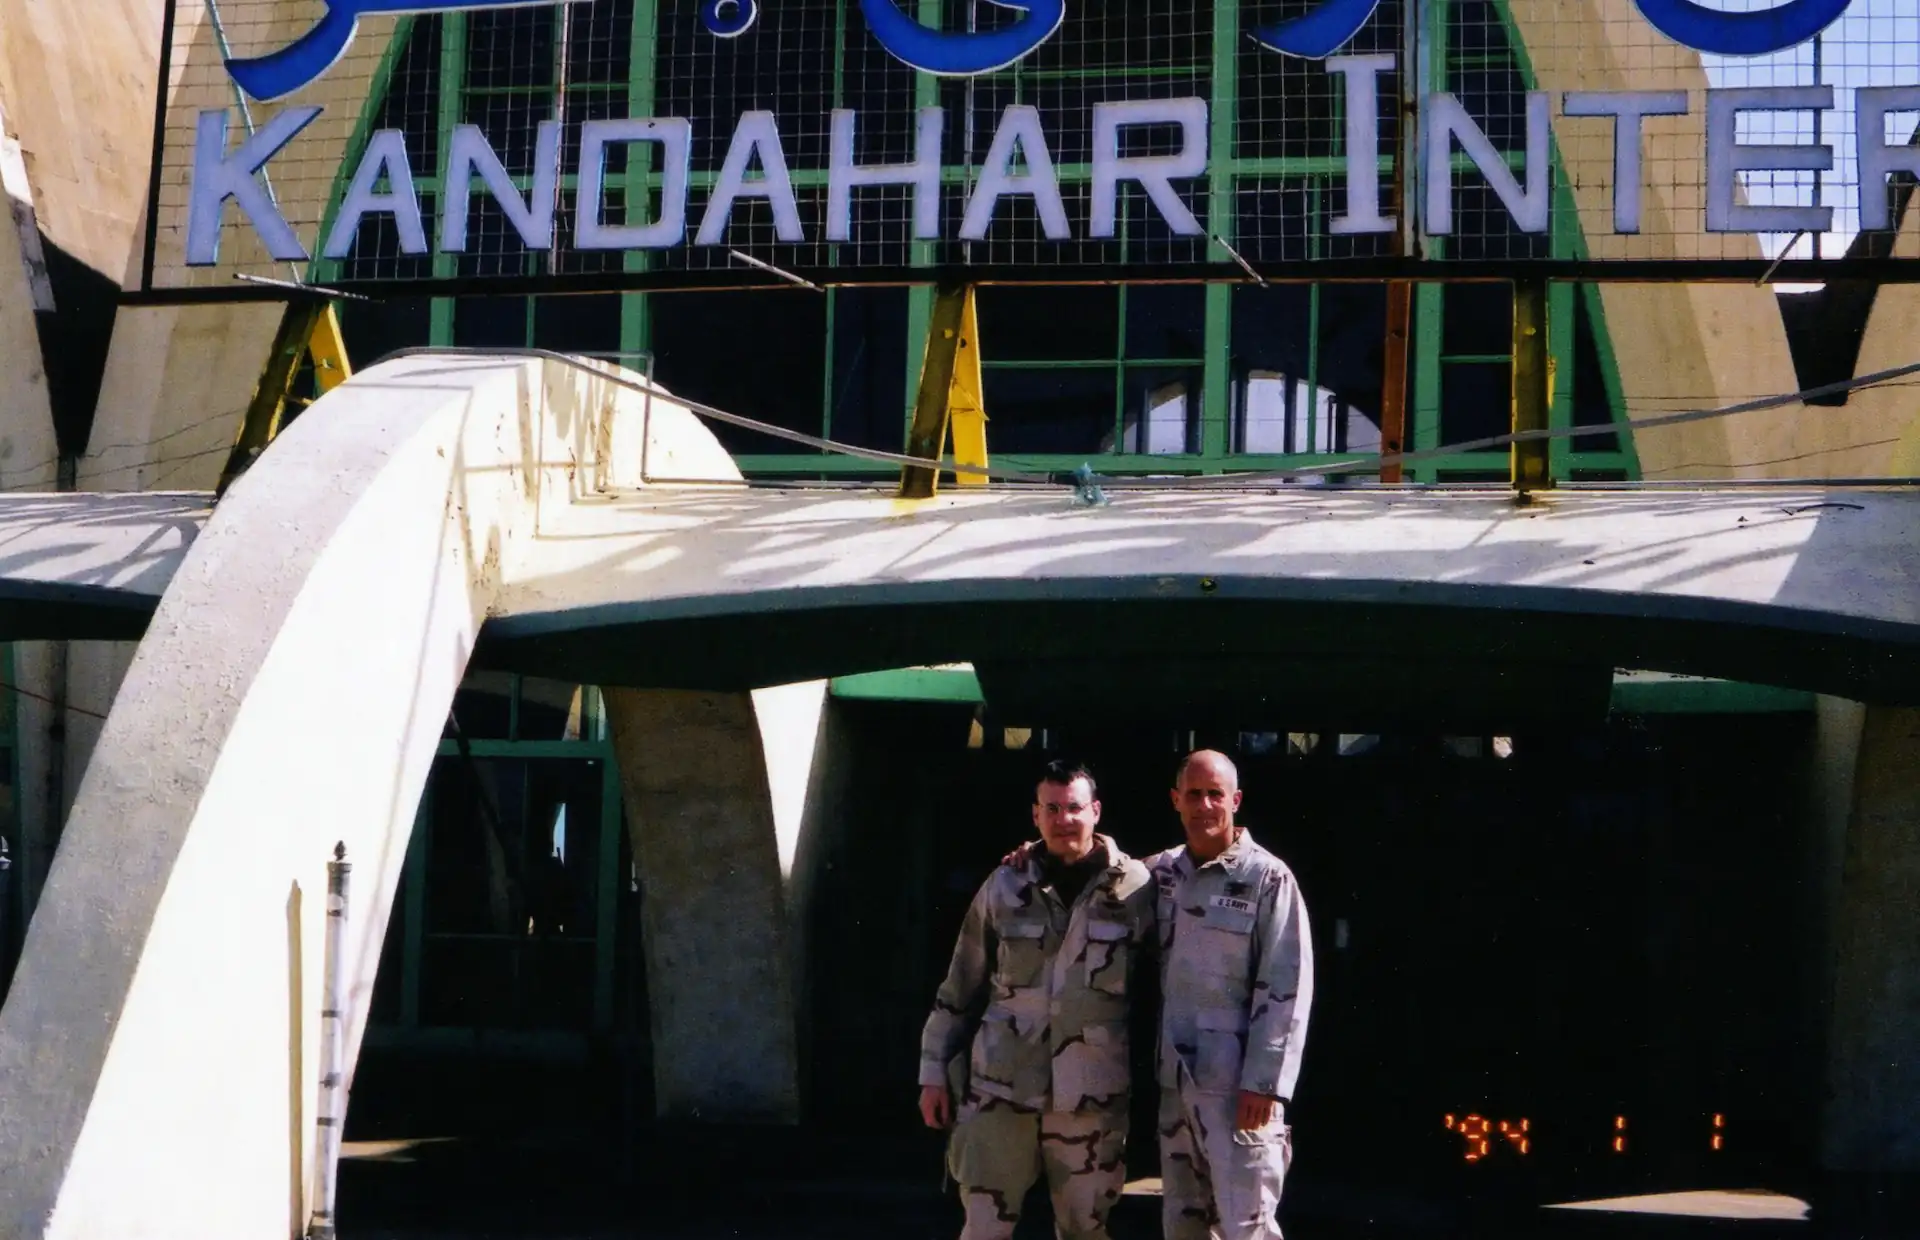 Kandahar Airport, Afghanistan